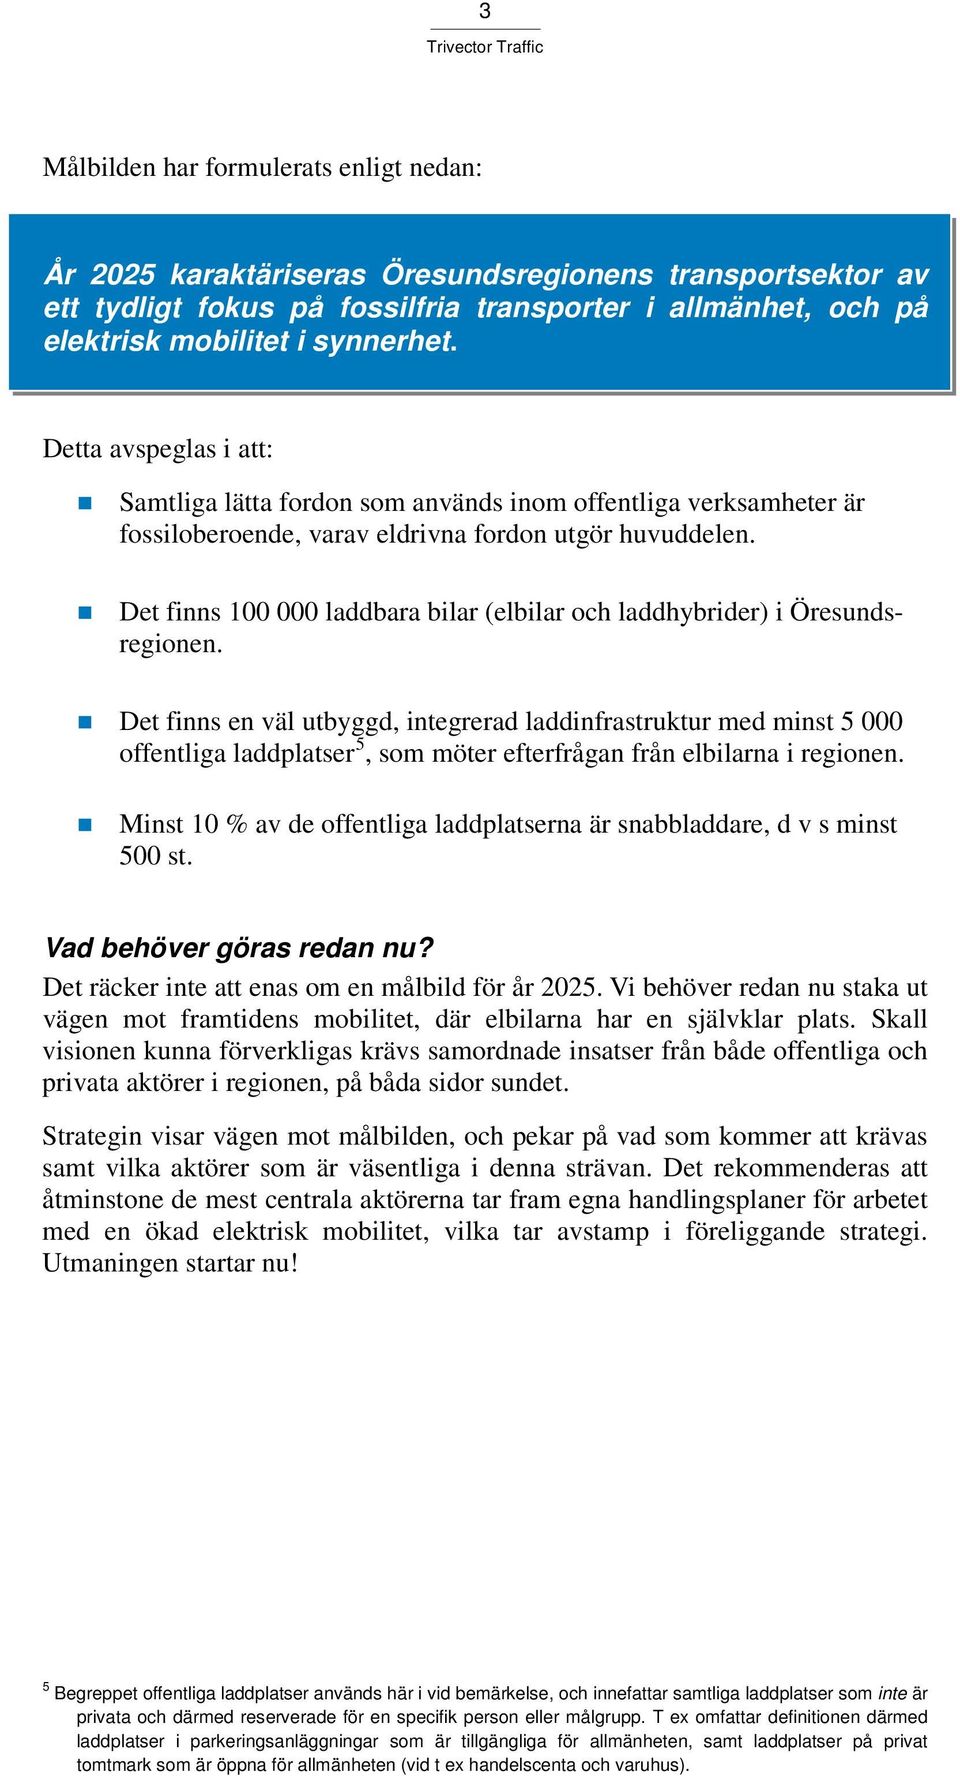 Det finns 100 000 laddbara bilar (elbilar och laddhybrider) i Öresundsregionen.